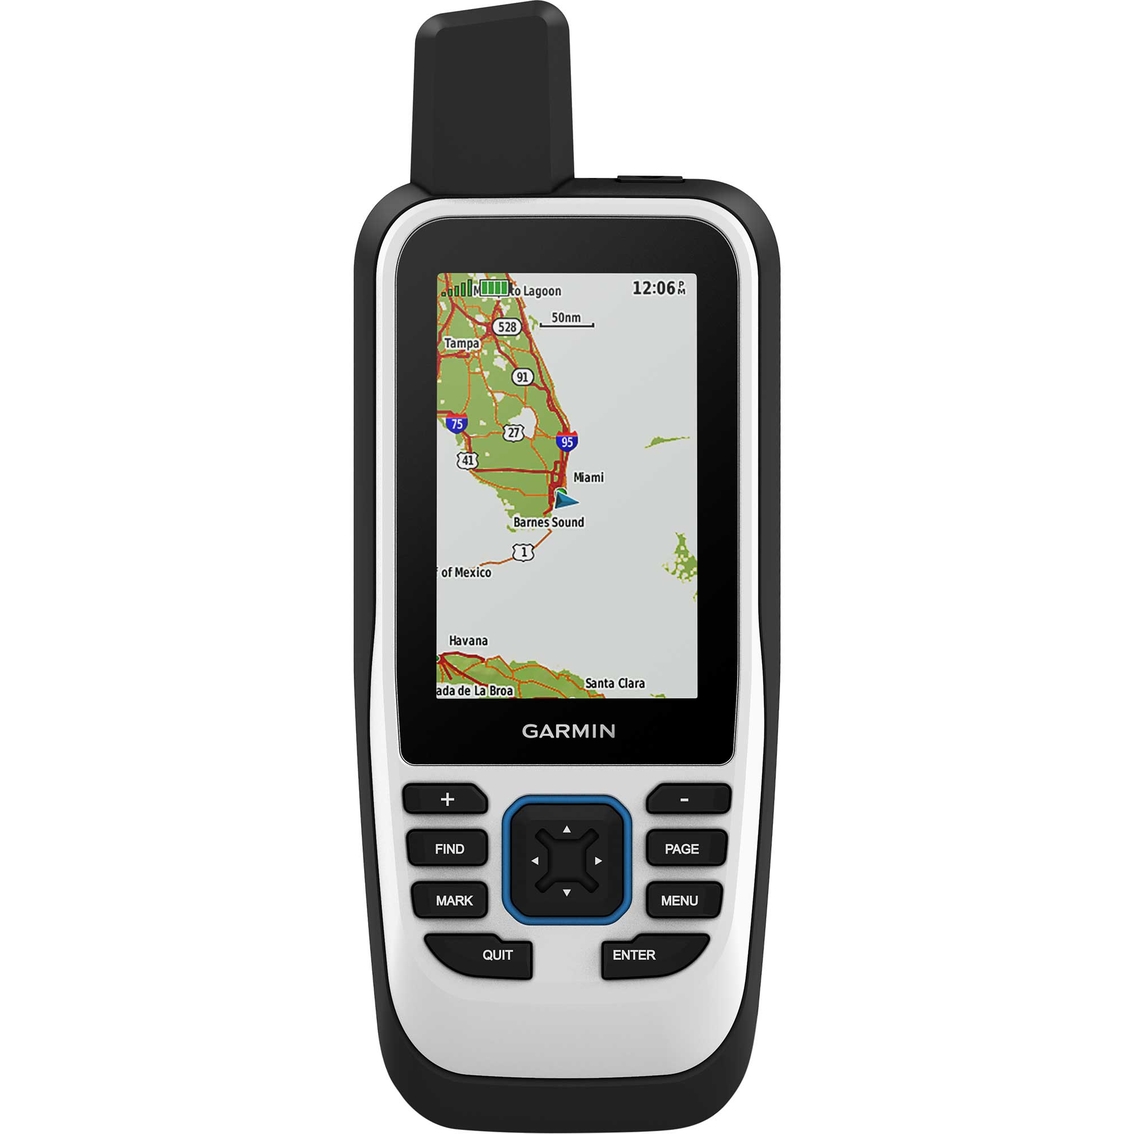 Garmin GPSMAP 86s - Image 2 of 4